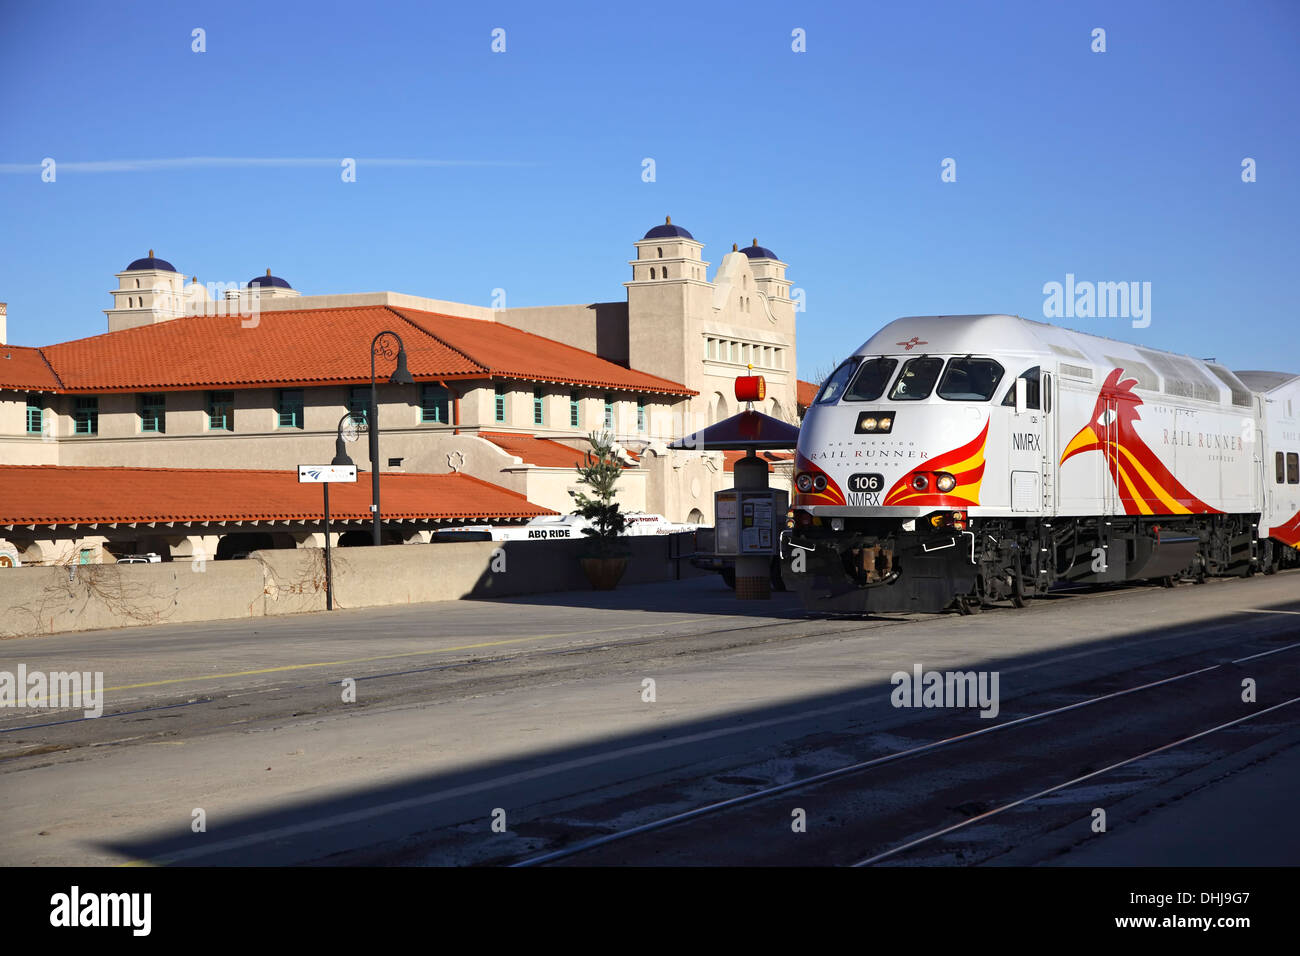 Alvarado Transportation Station and Rail Runner, Albuquerque, New Mexico USA Stock Photo